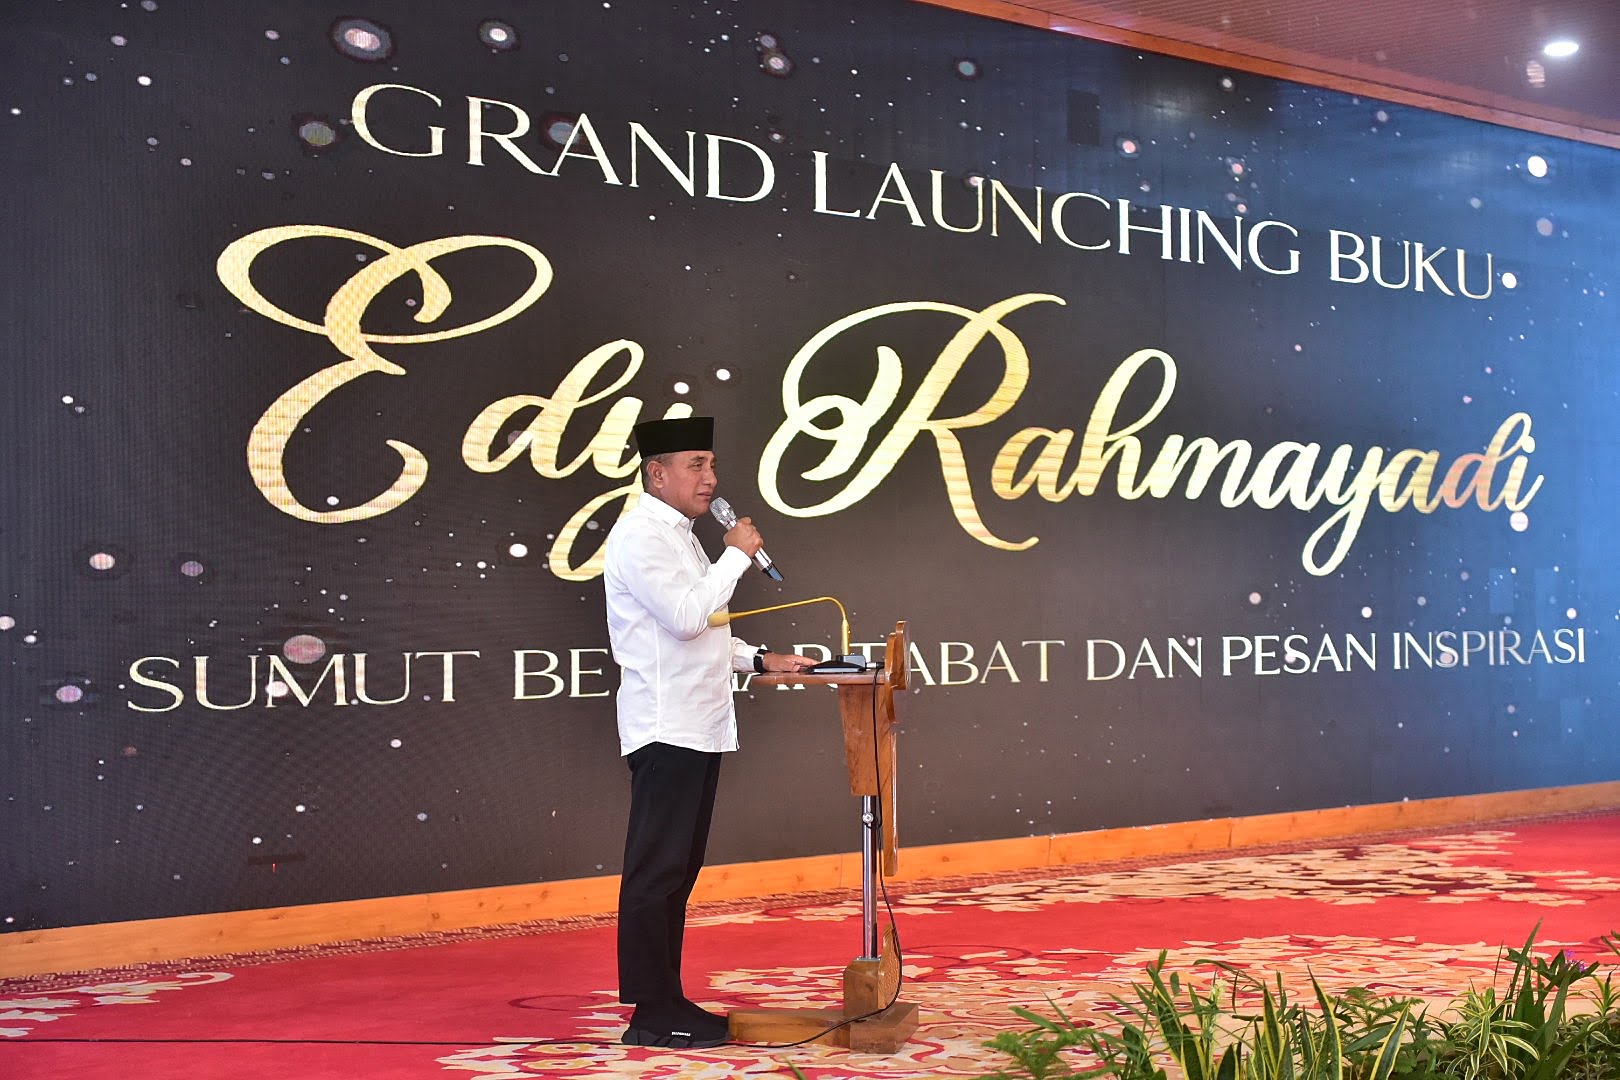 Grand Launching Buku Edy Rahmayadi Sumut Bermartabat dan Pesan Inspirasi